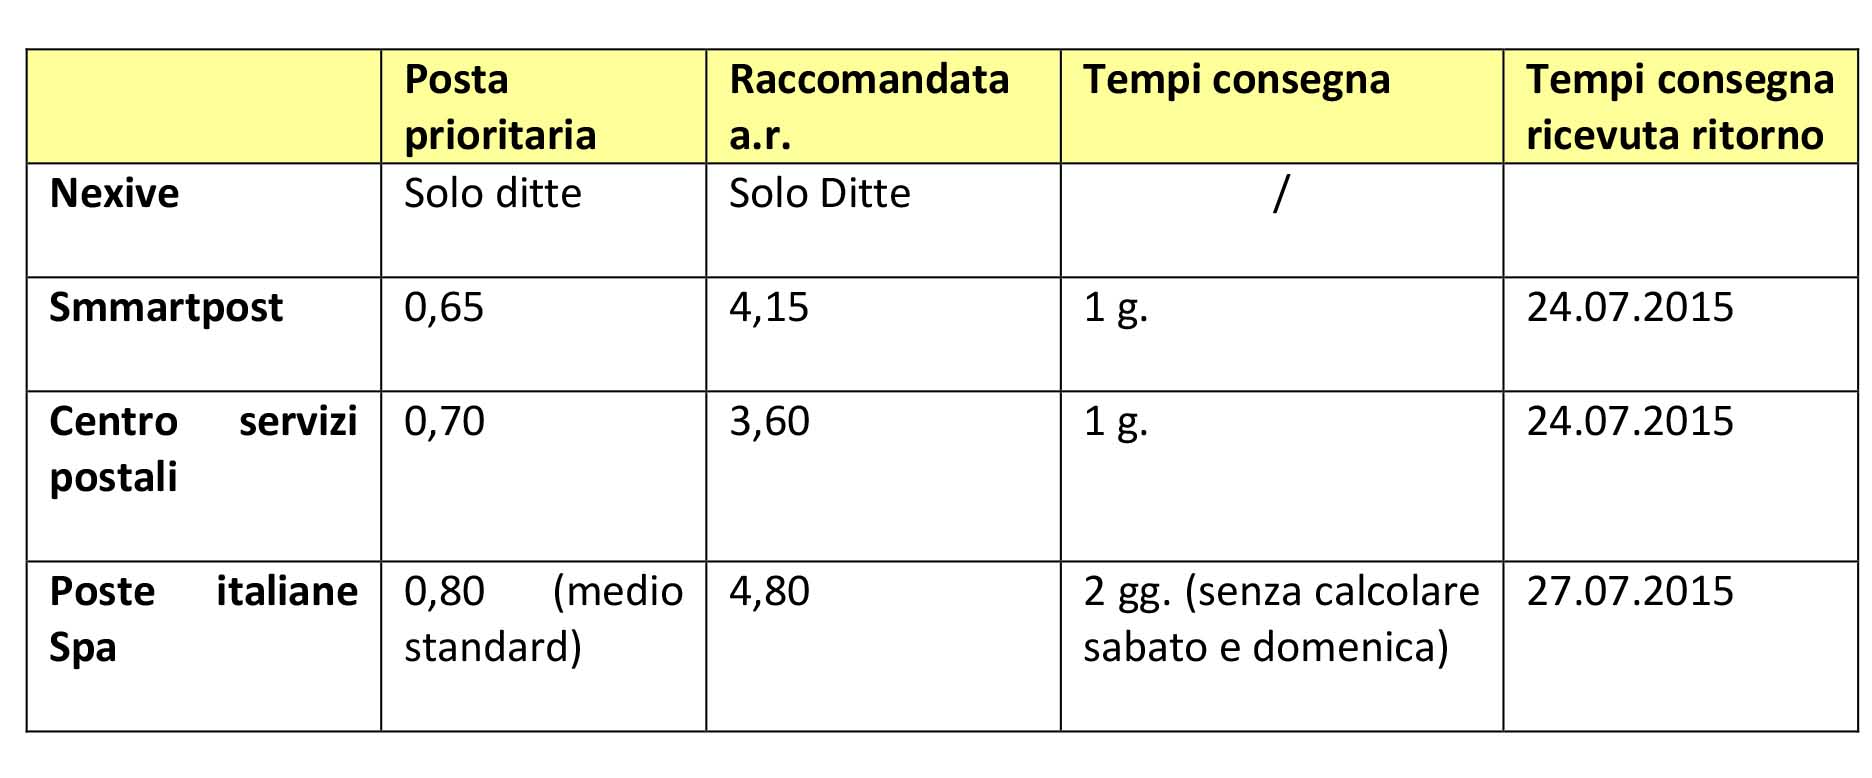 Servizi postali in Trentino tabella costi servizi